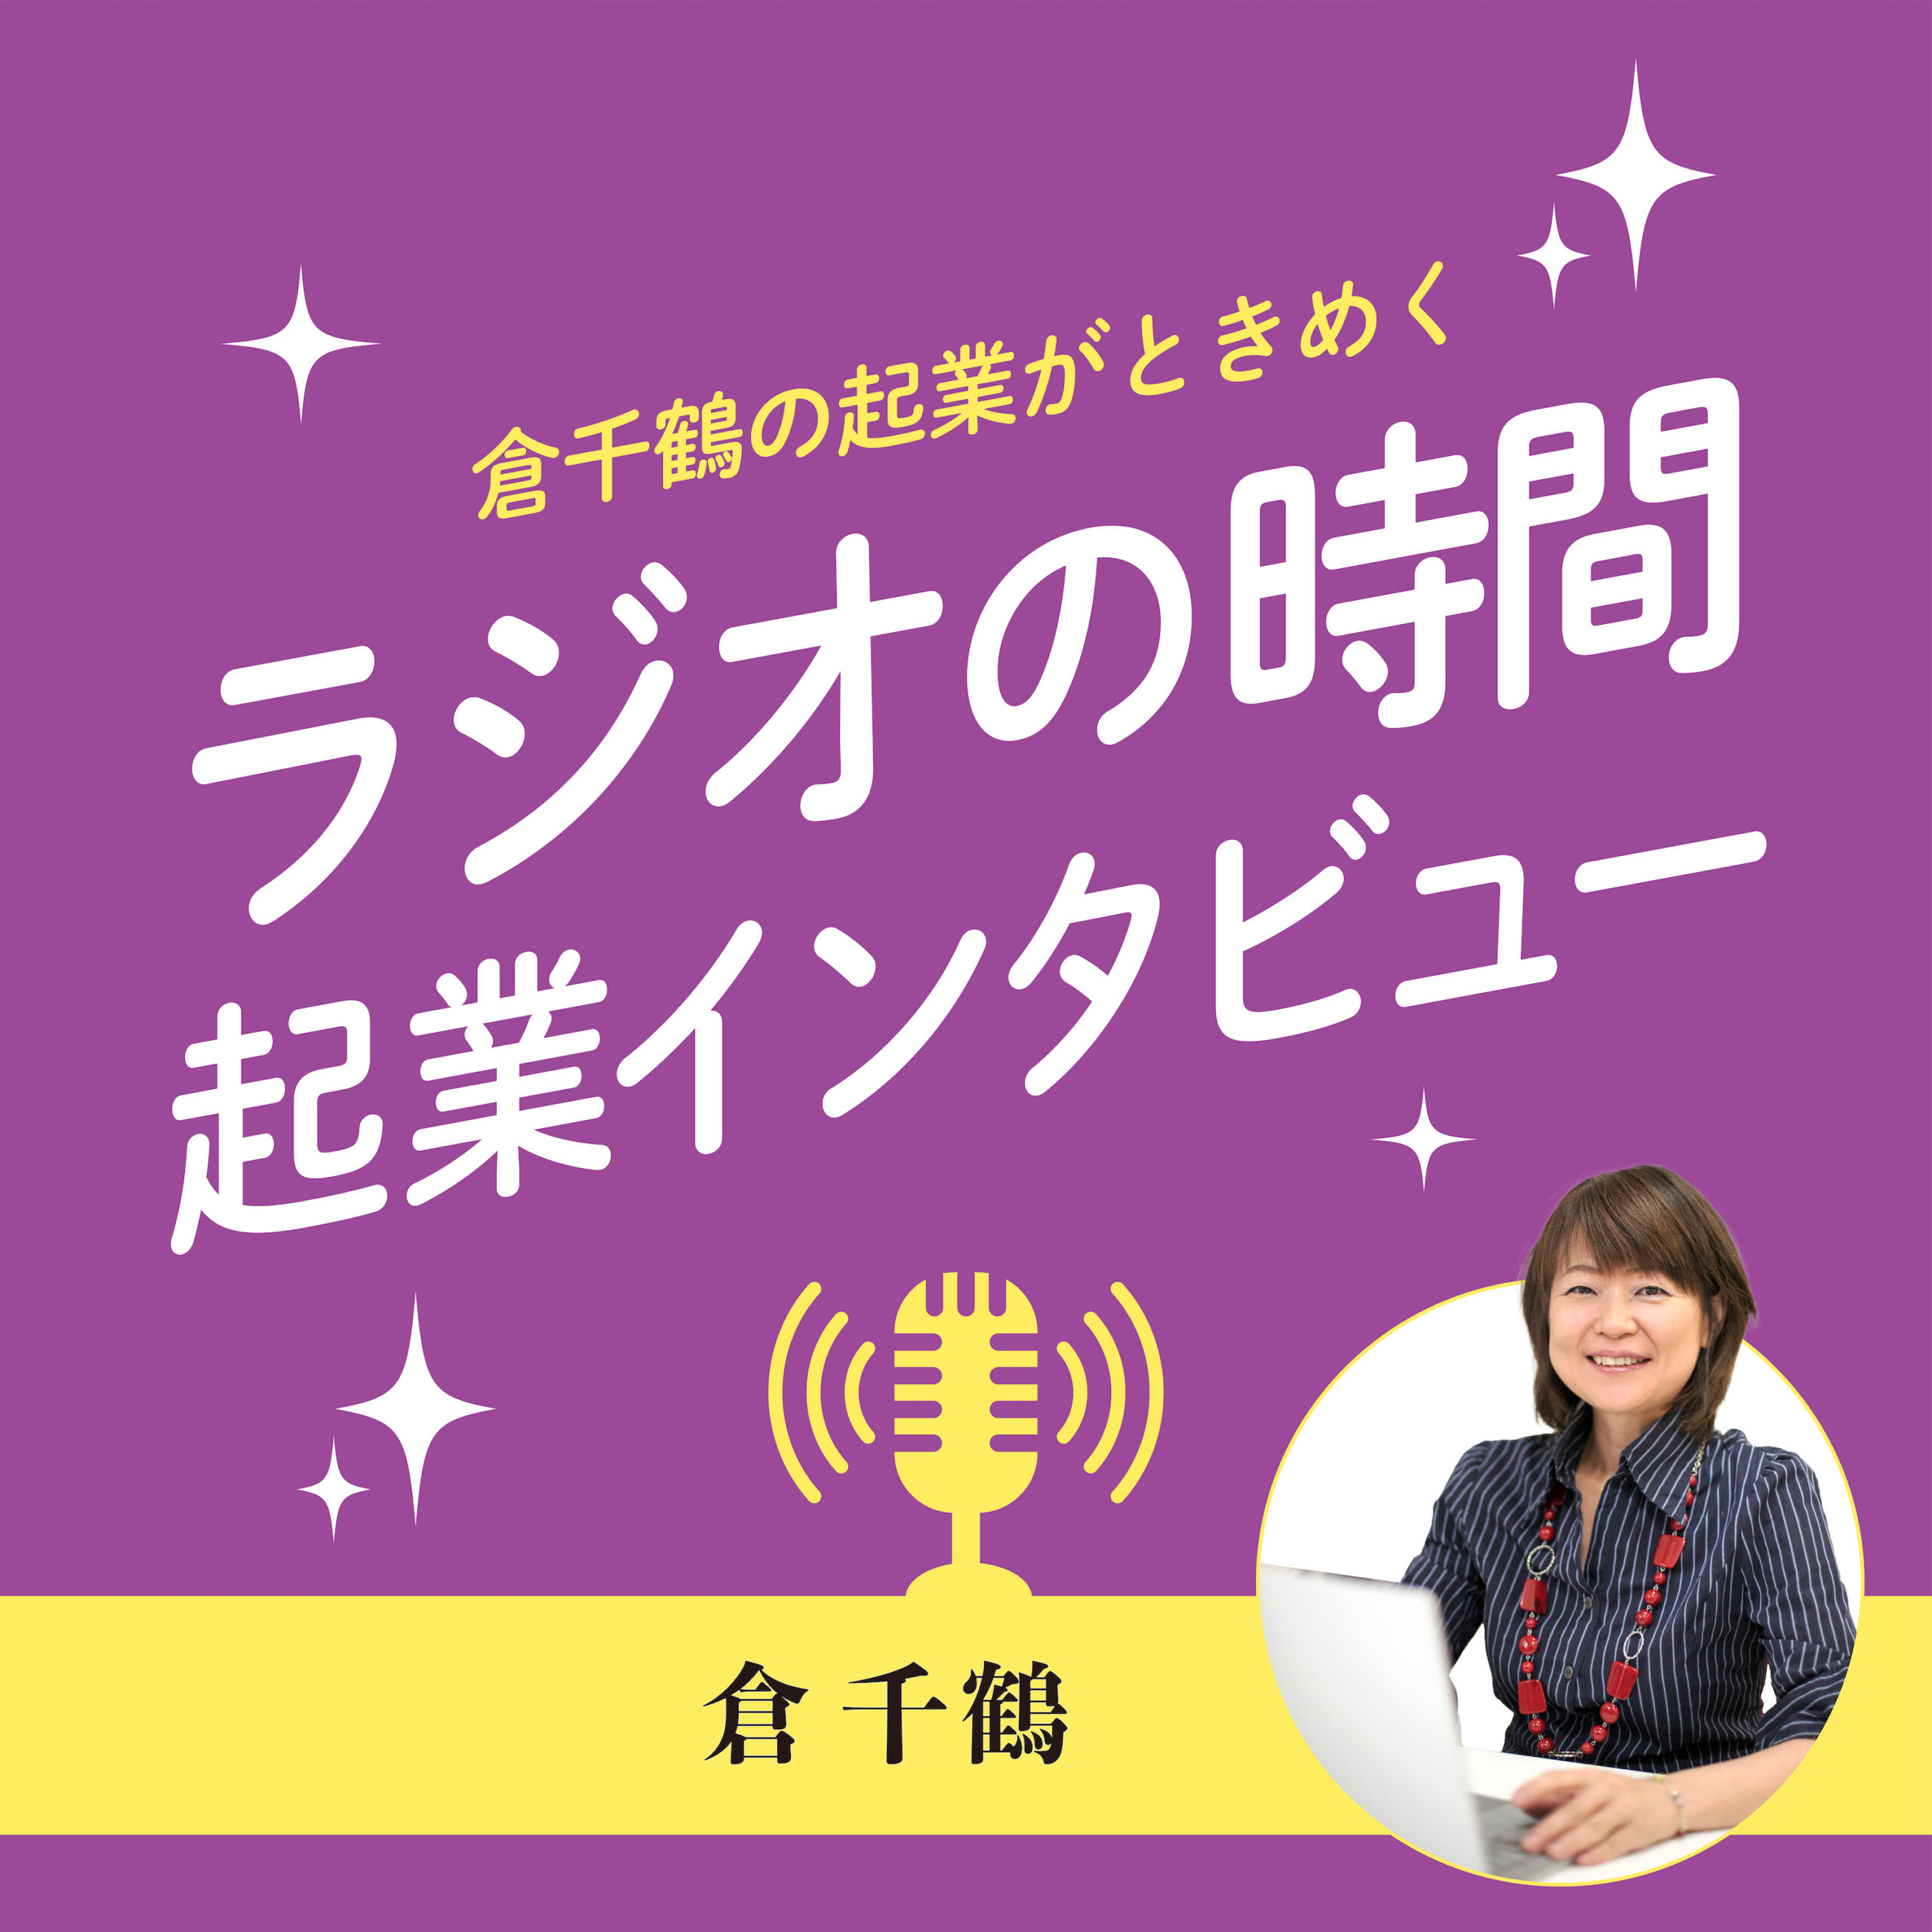 倉千鶴の起業がときめくラジオの時間 起業インタビュー